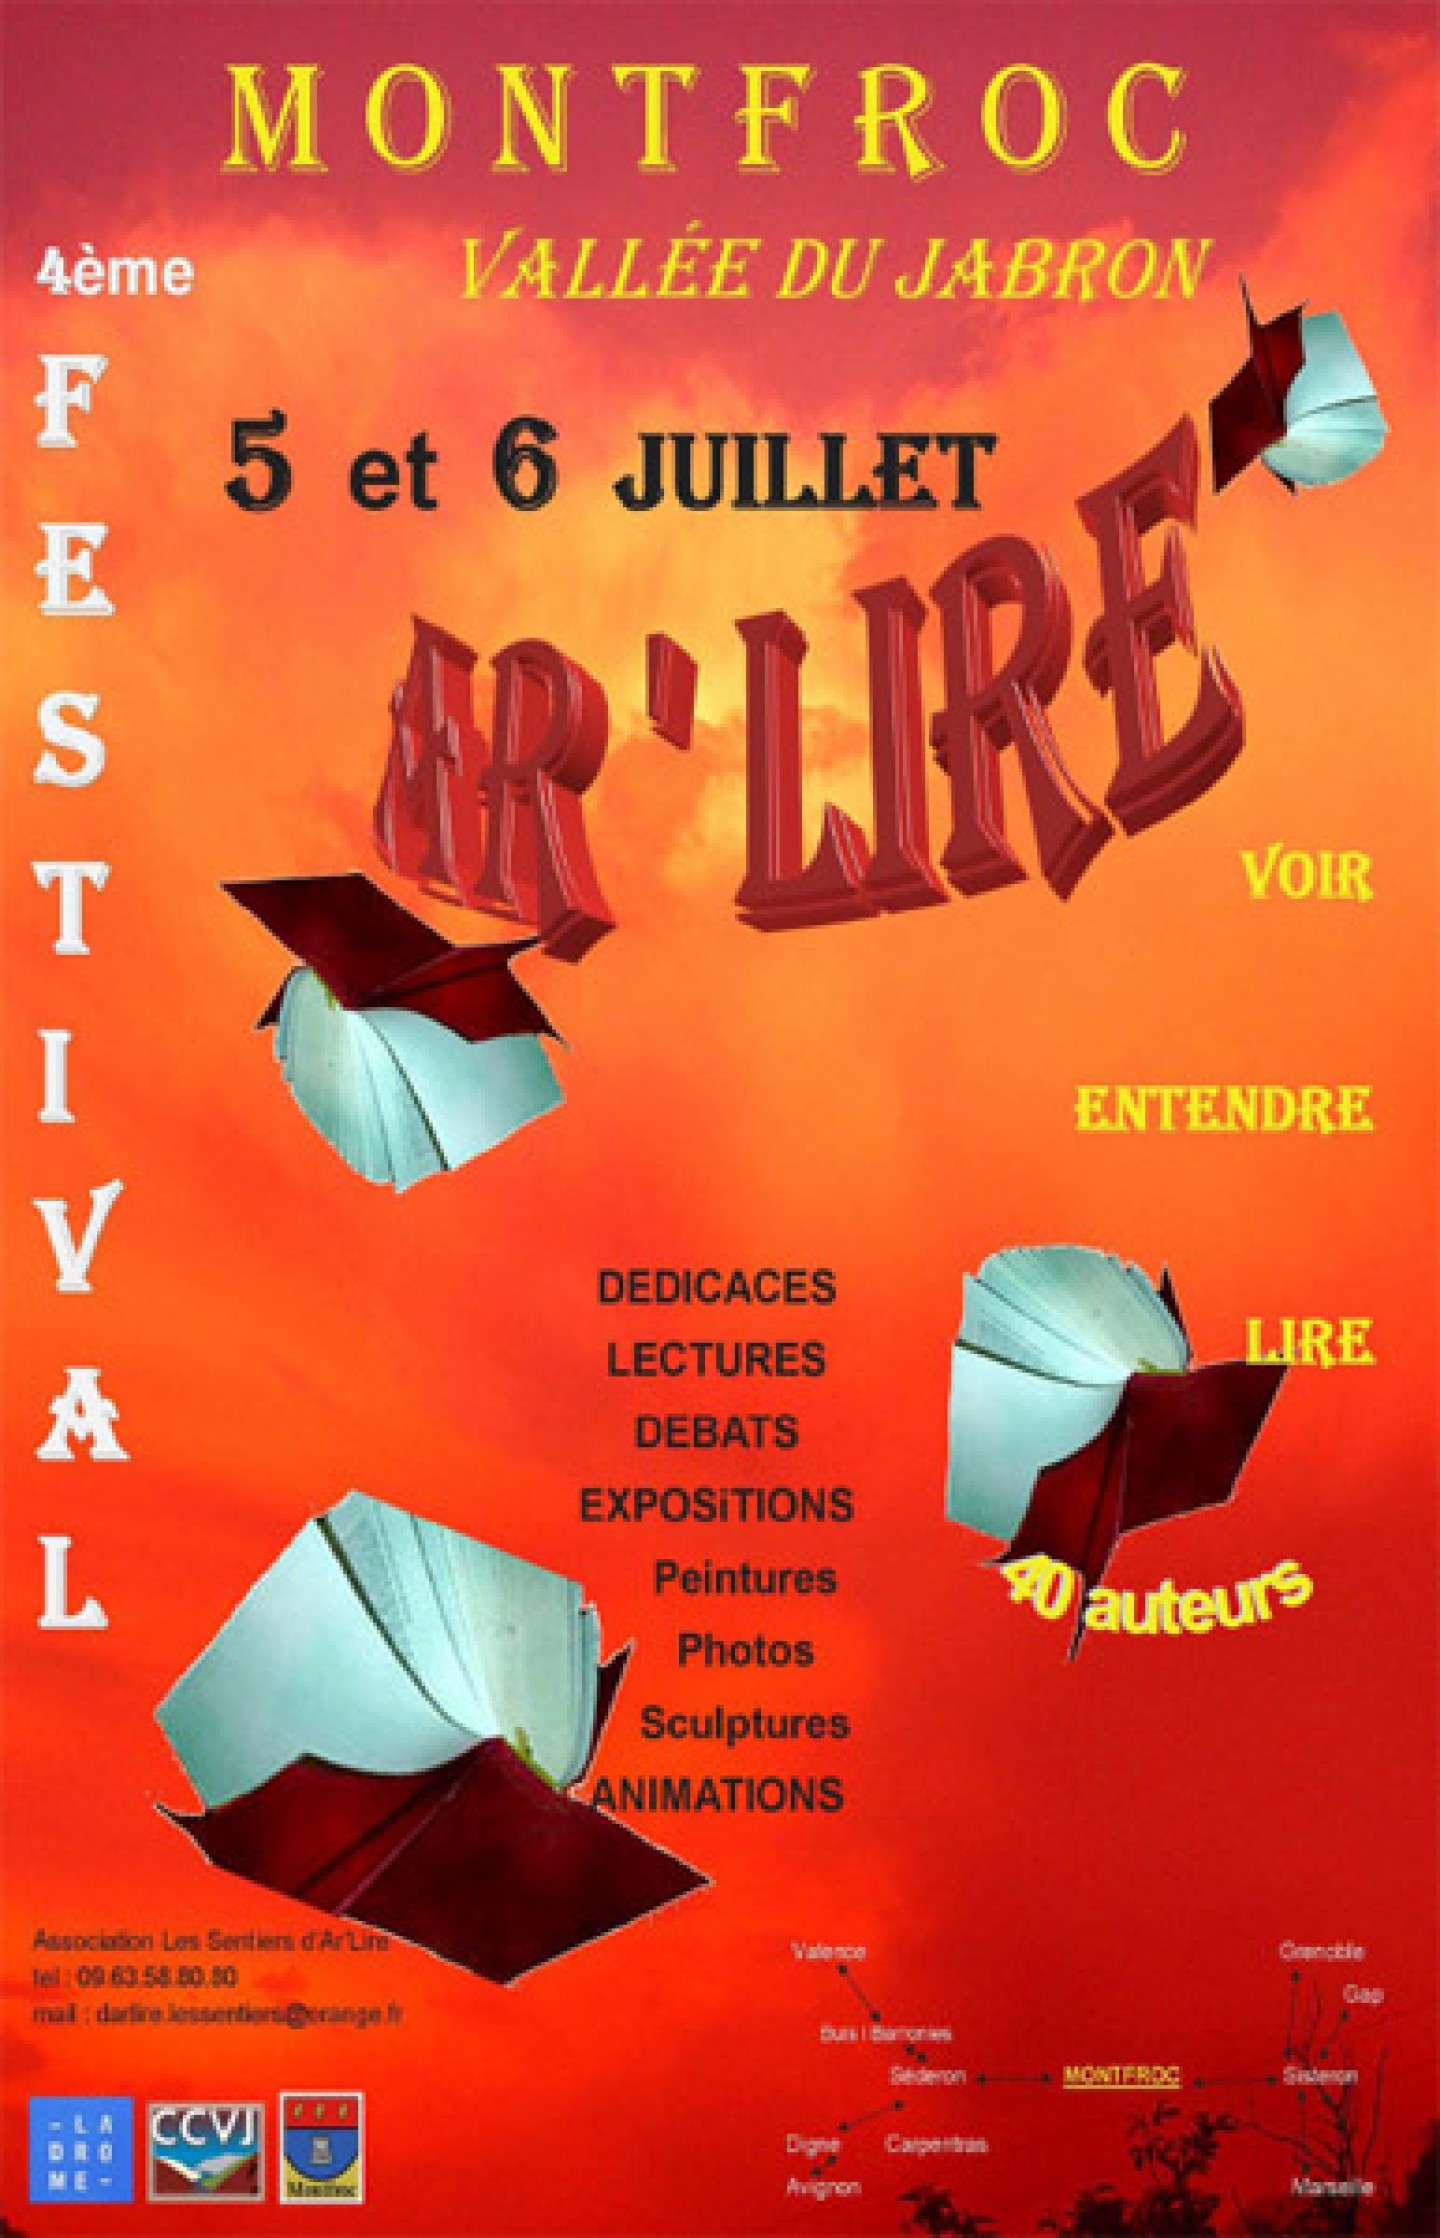 Festival AR'LIRE à Montfroc